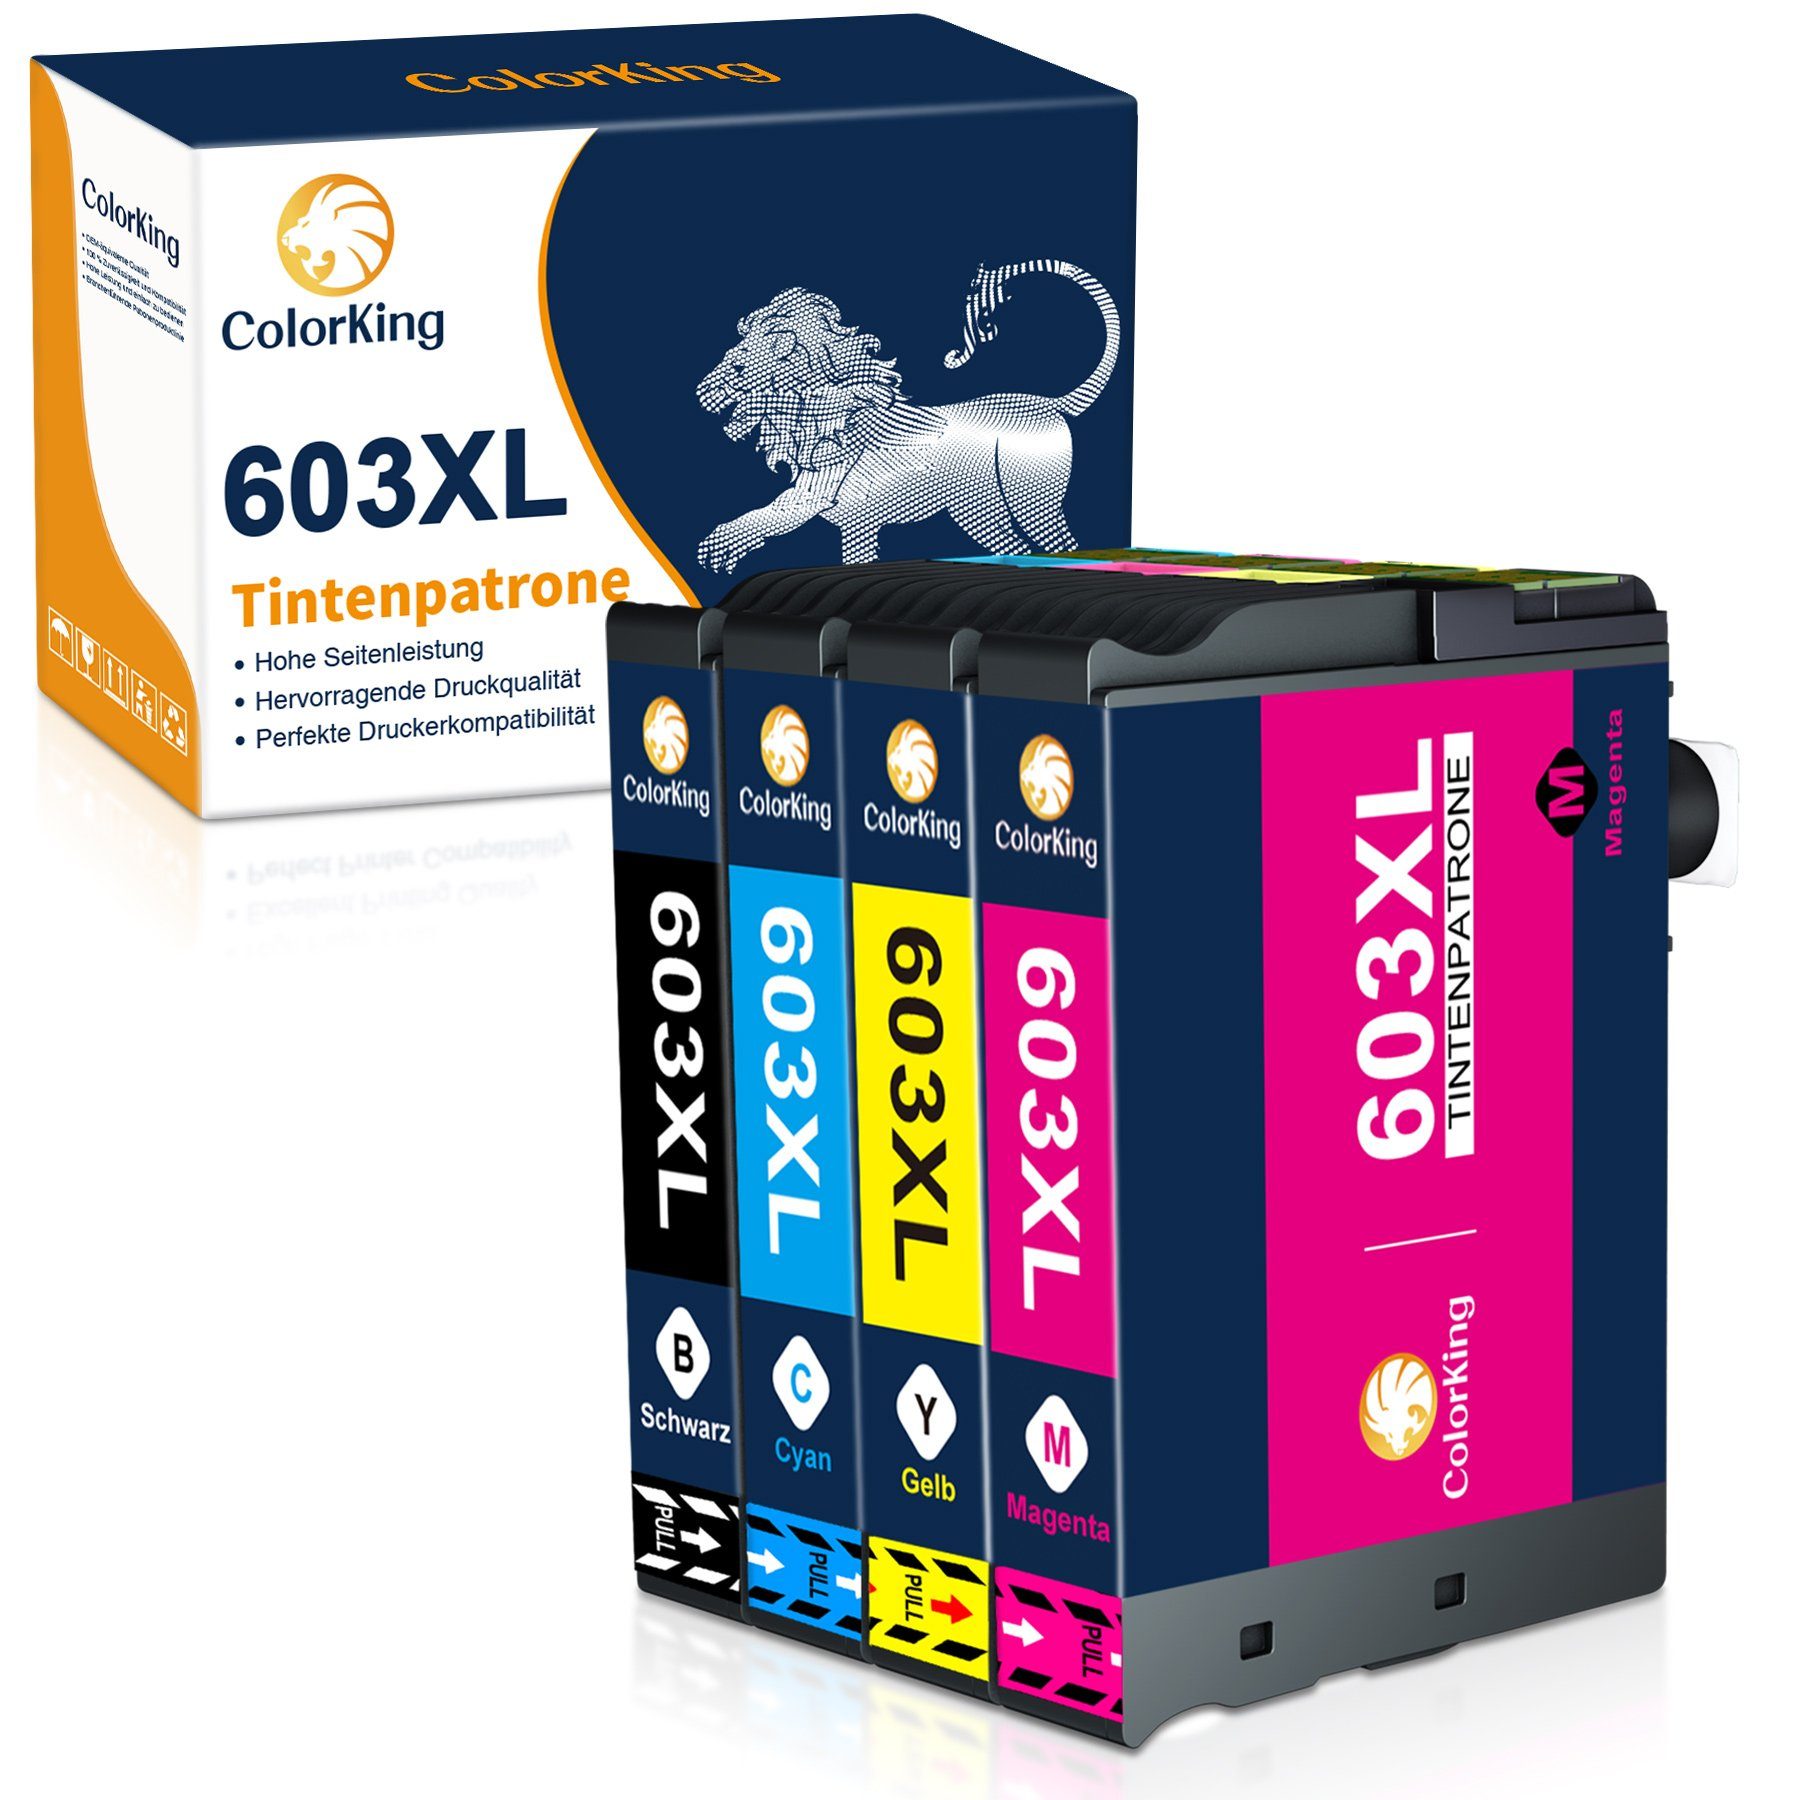 ColorKing 603XL multipack Tintenpatrone (Ersatz für Workforce WF-2835 2850 2830 2810) 1* Schwarz, 1* Cyan, 1* Magenta, 1* Gelb (4er Set) | Tintenpatronen